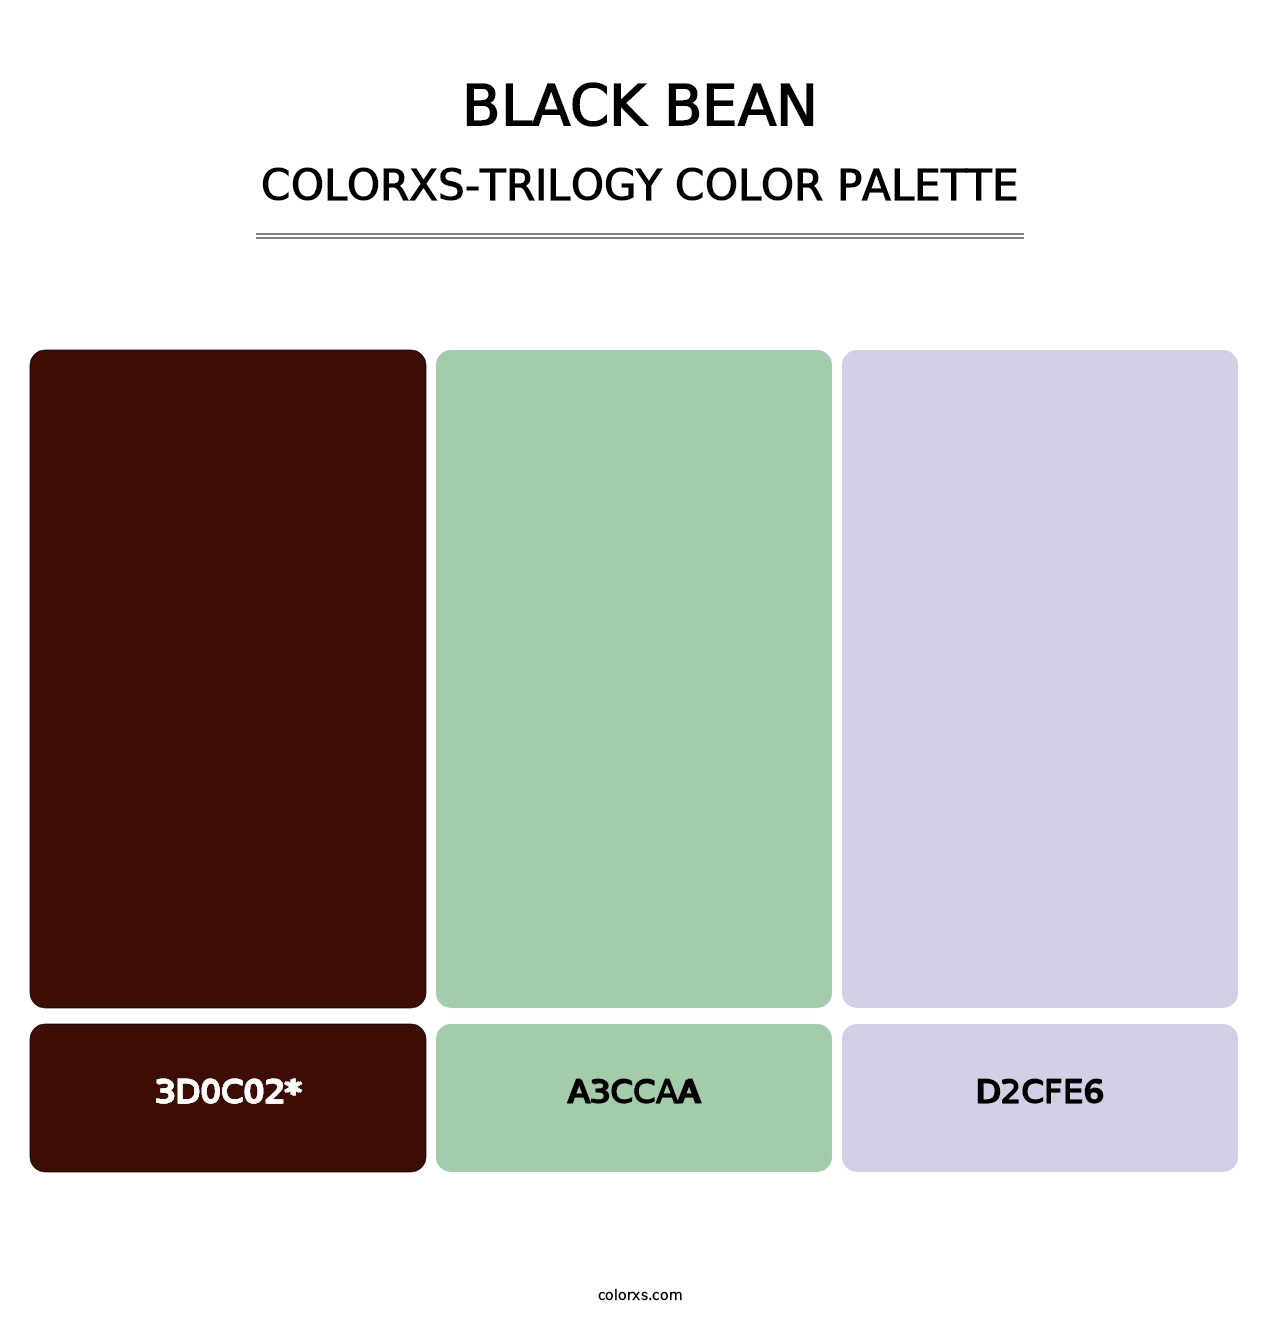 Black Bean - Colorxs Trilogy Palette